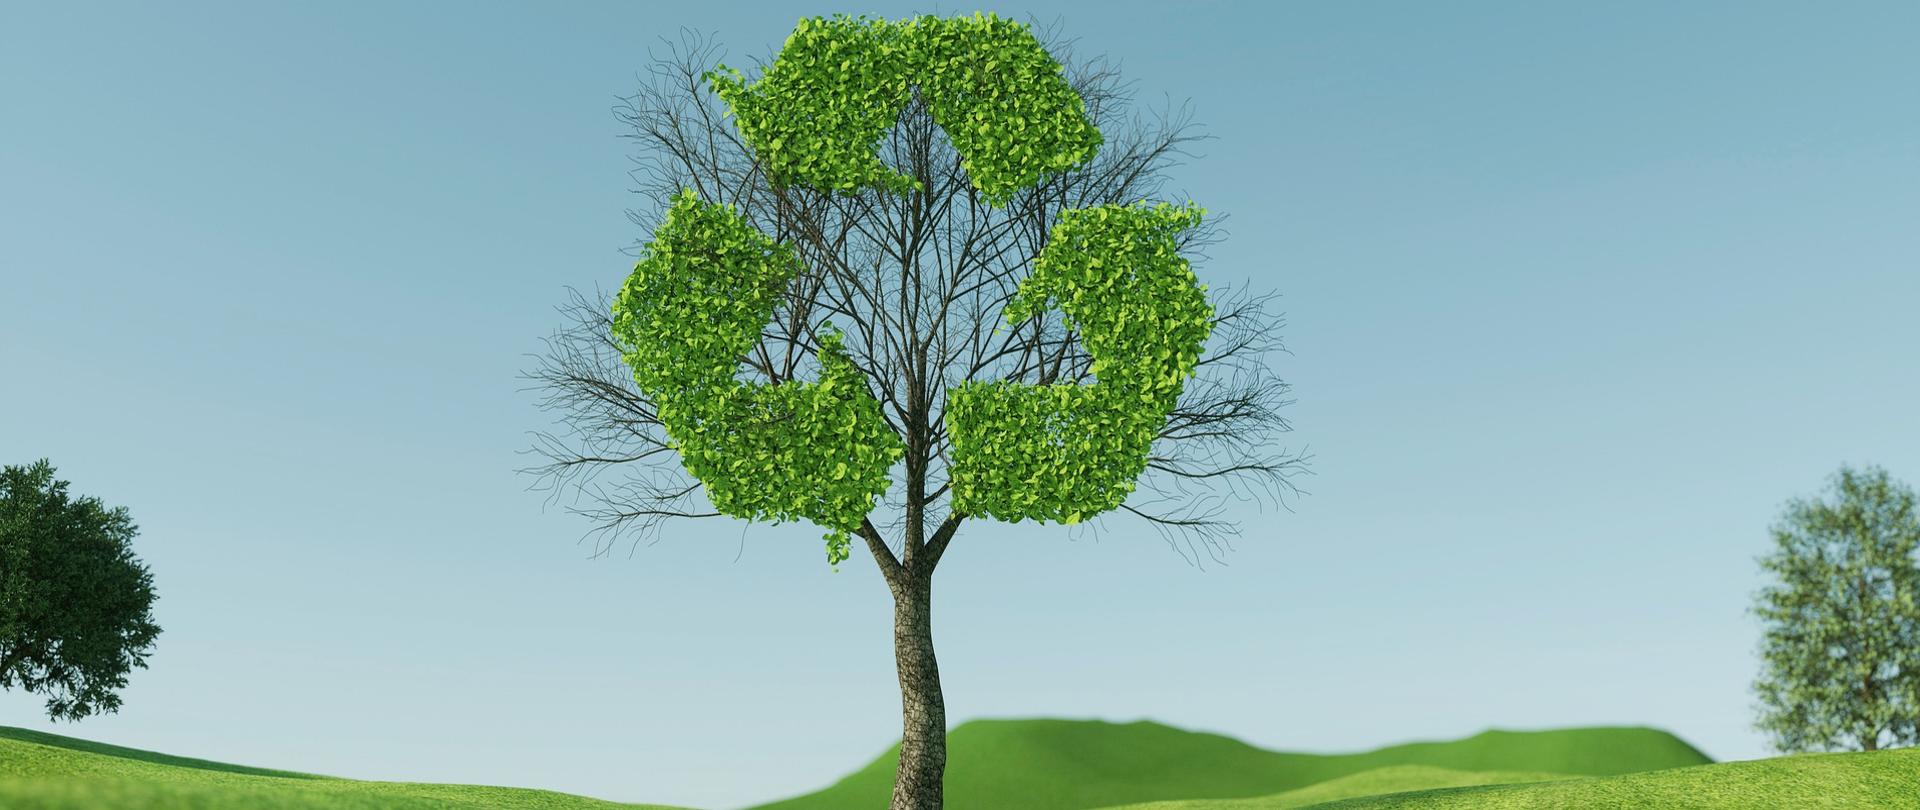 grafika przedstawia drzewo w koronie którego z liści jest utworzony symbol recyklingu